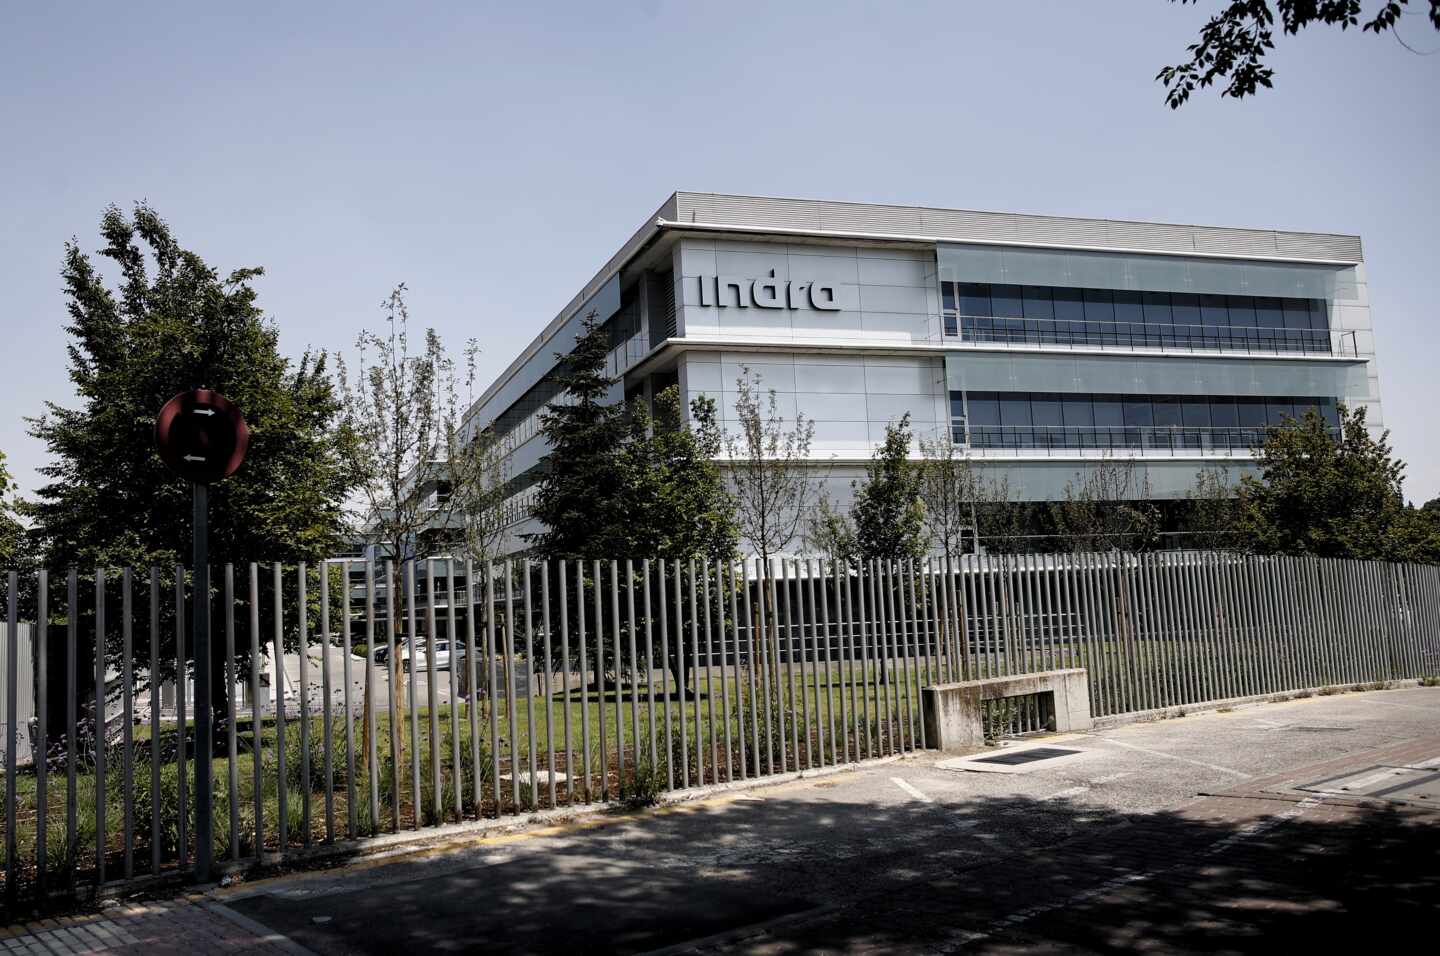 Indra crea 29 empleos netos en su sede de Aranjuez en 2019, que alcanza los 694 trabajadores